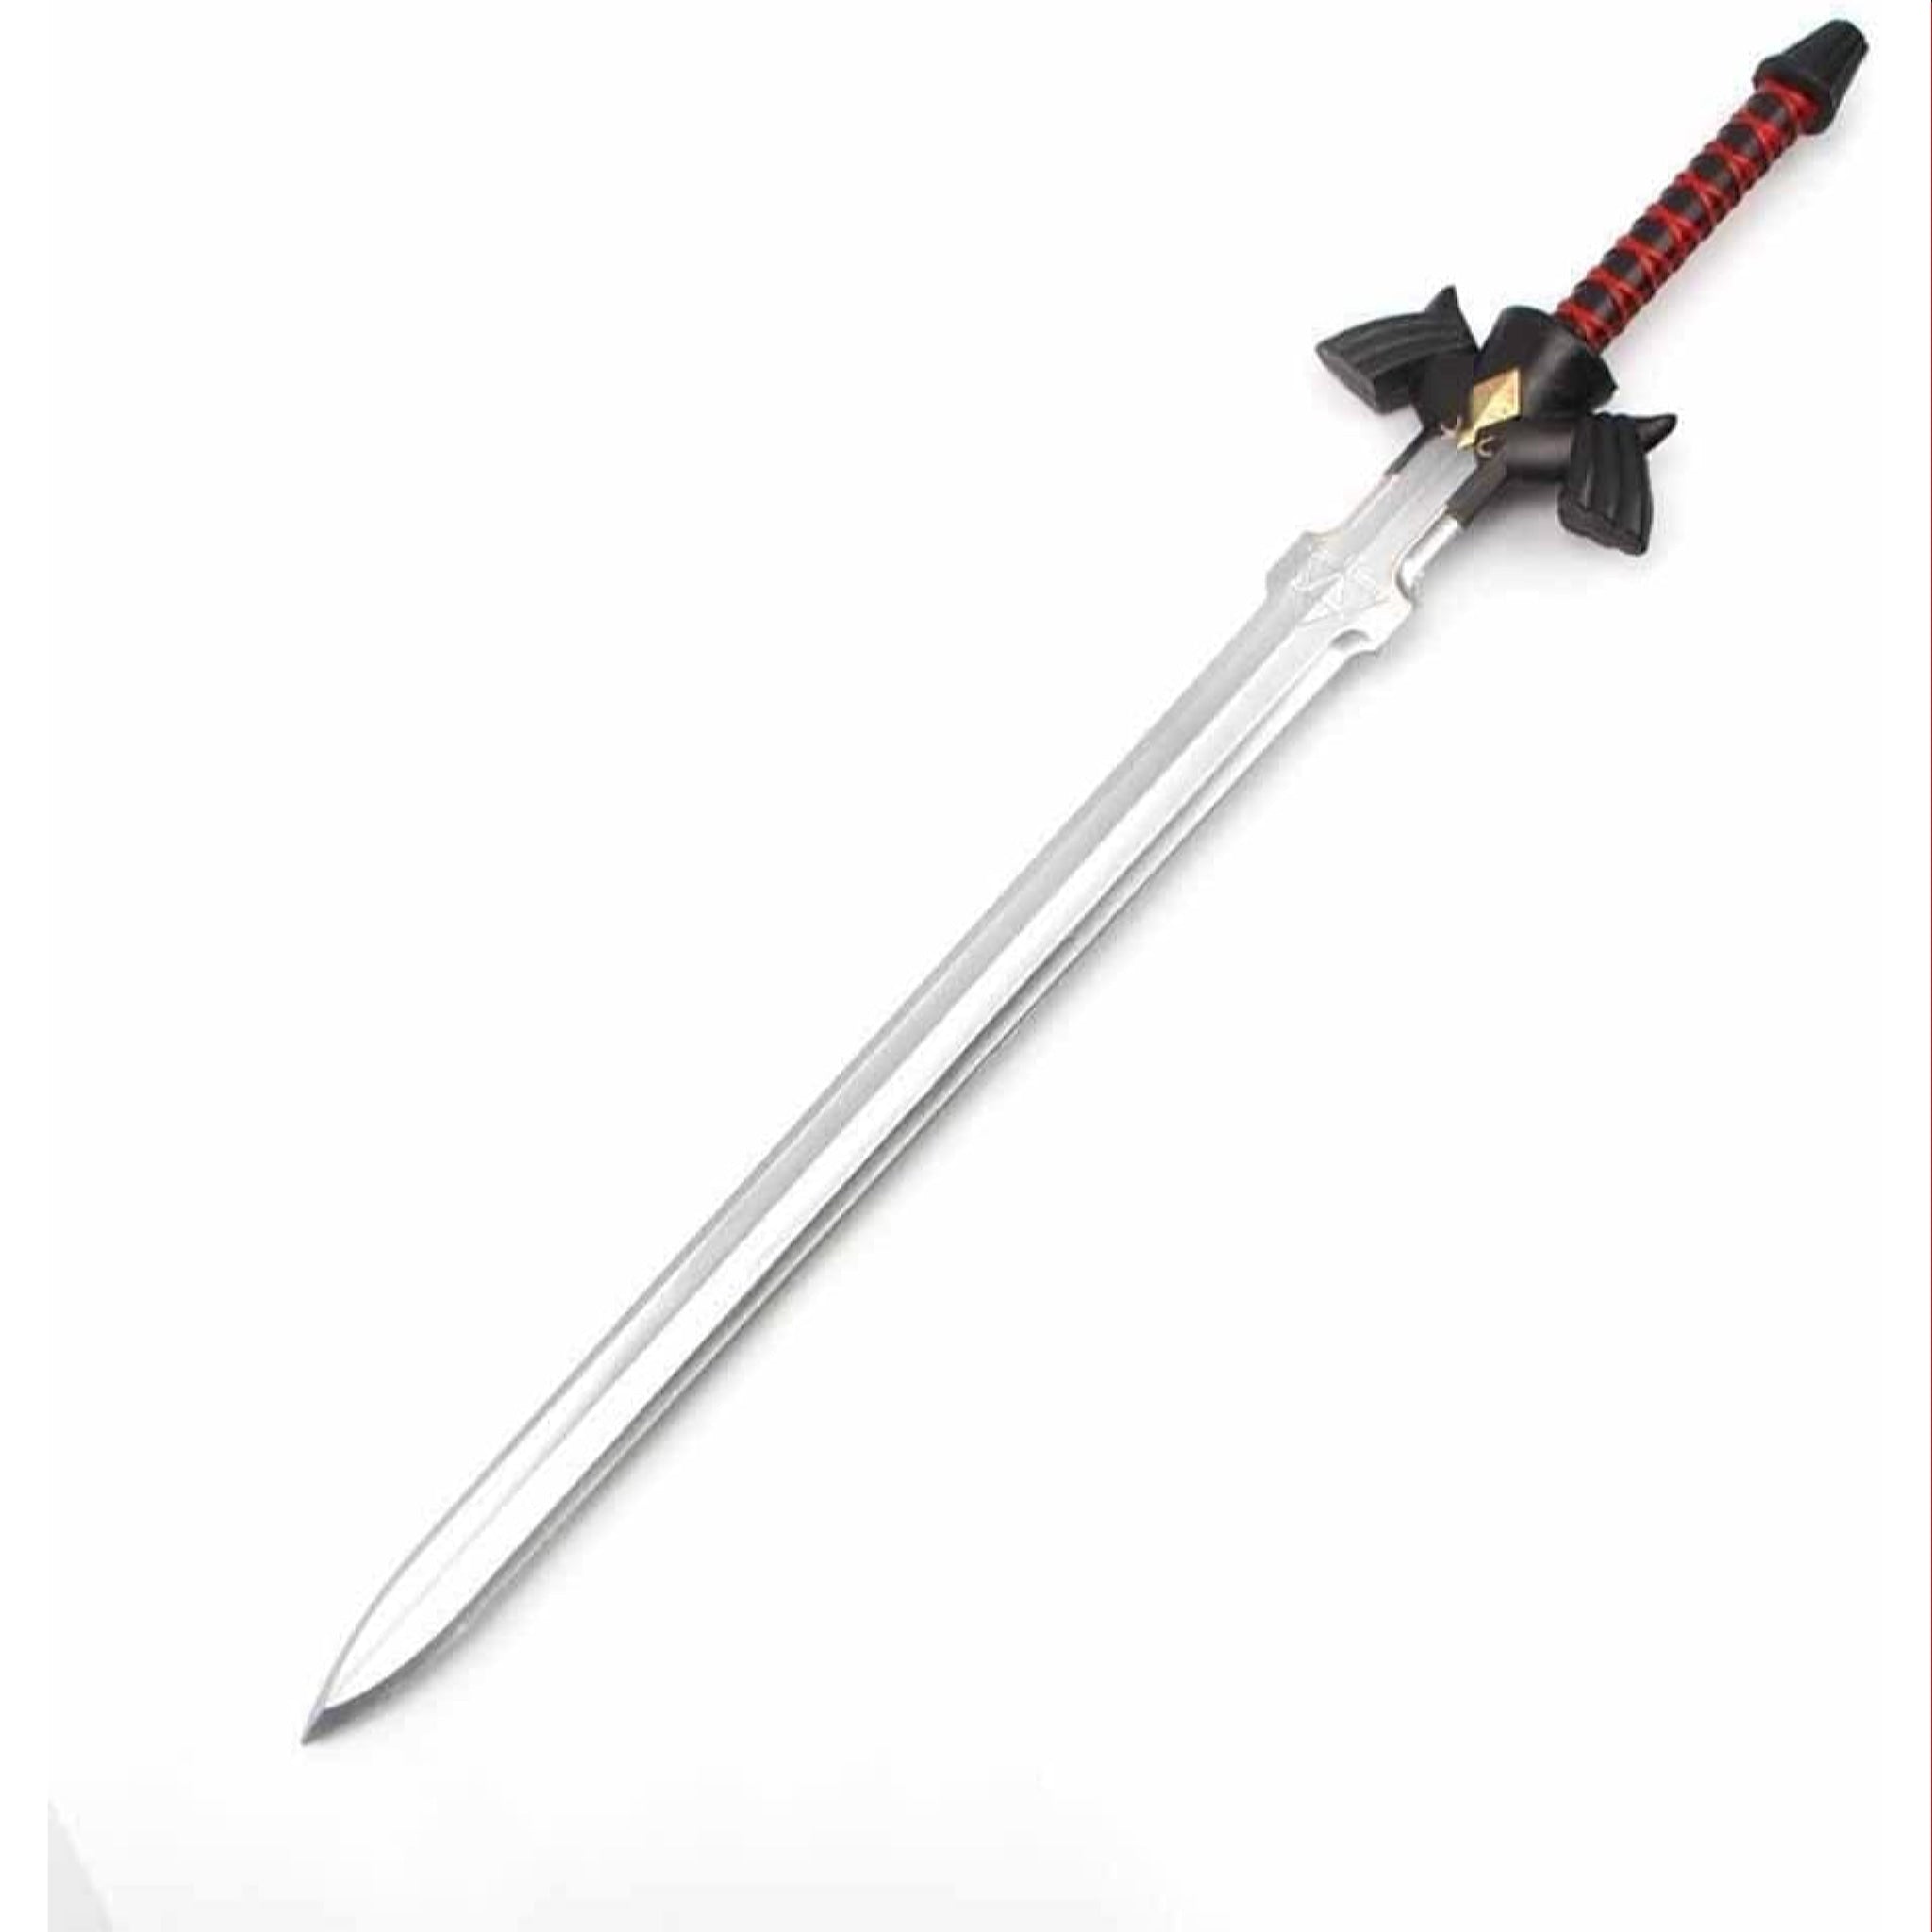 Legend of Zelda Twilight Princess Dark Link Master Sword Foam Cosplay Sword